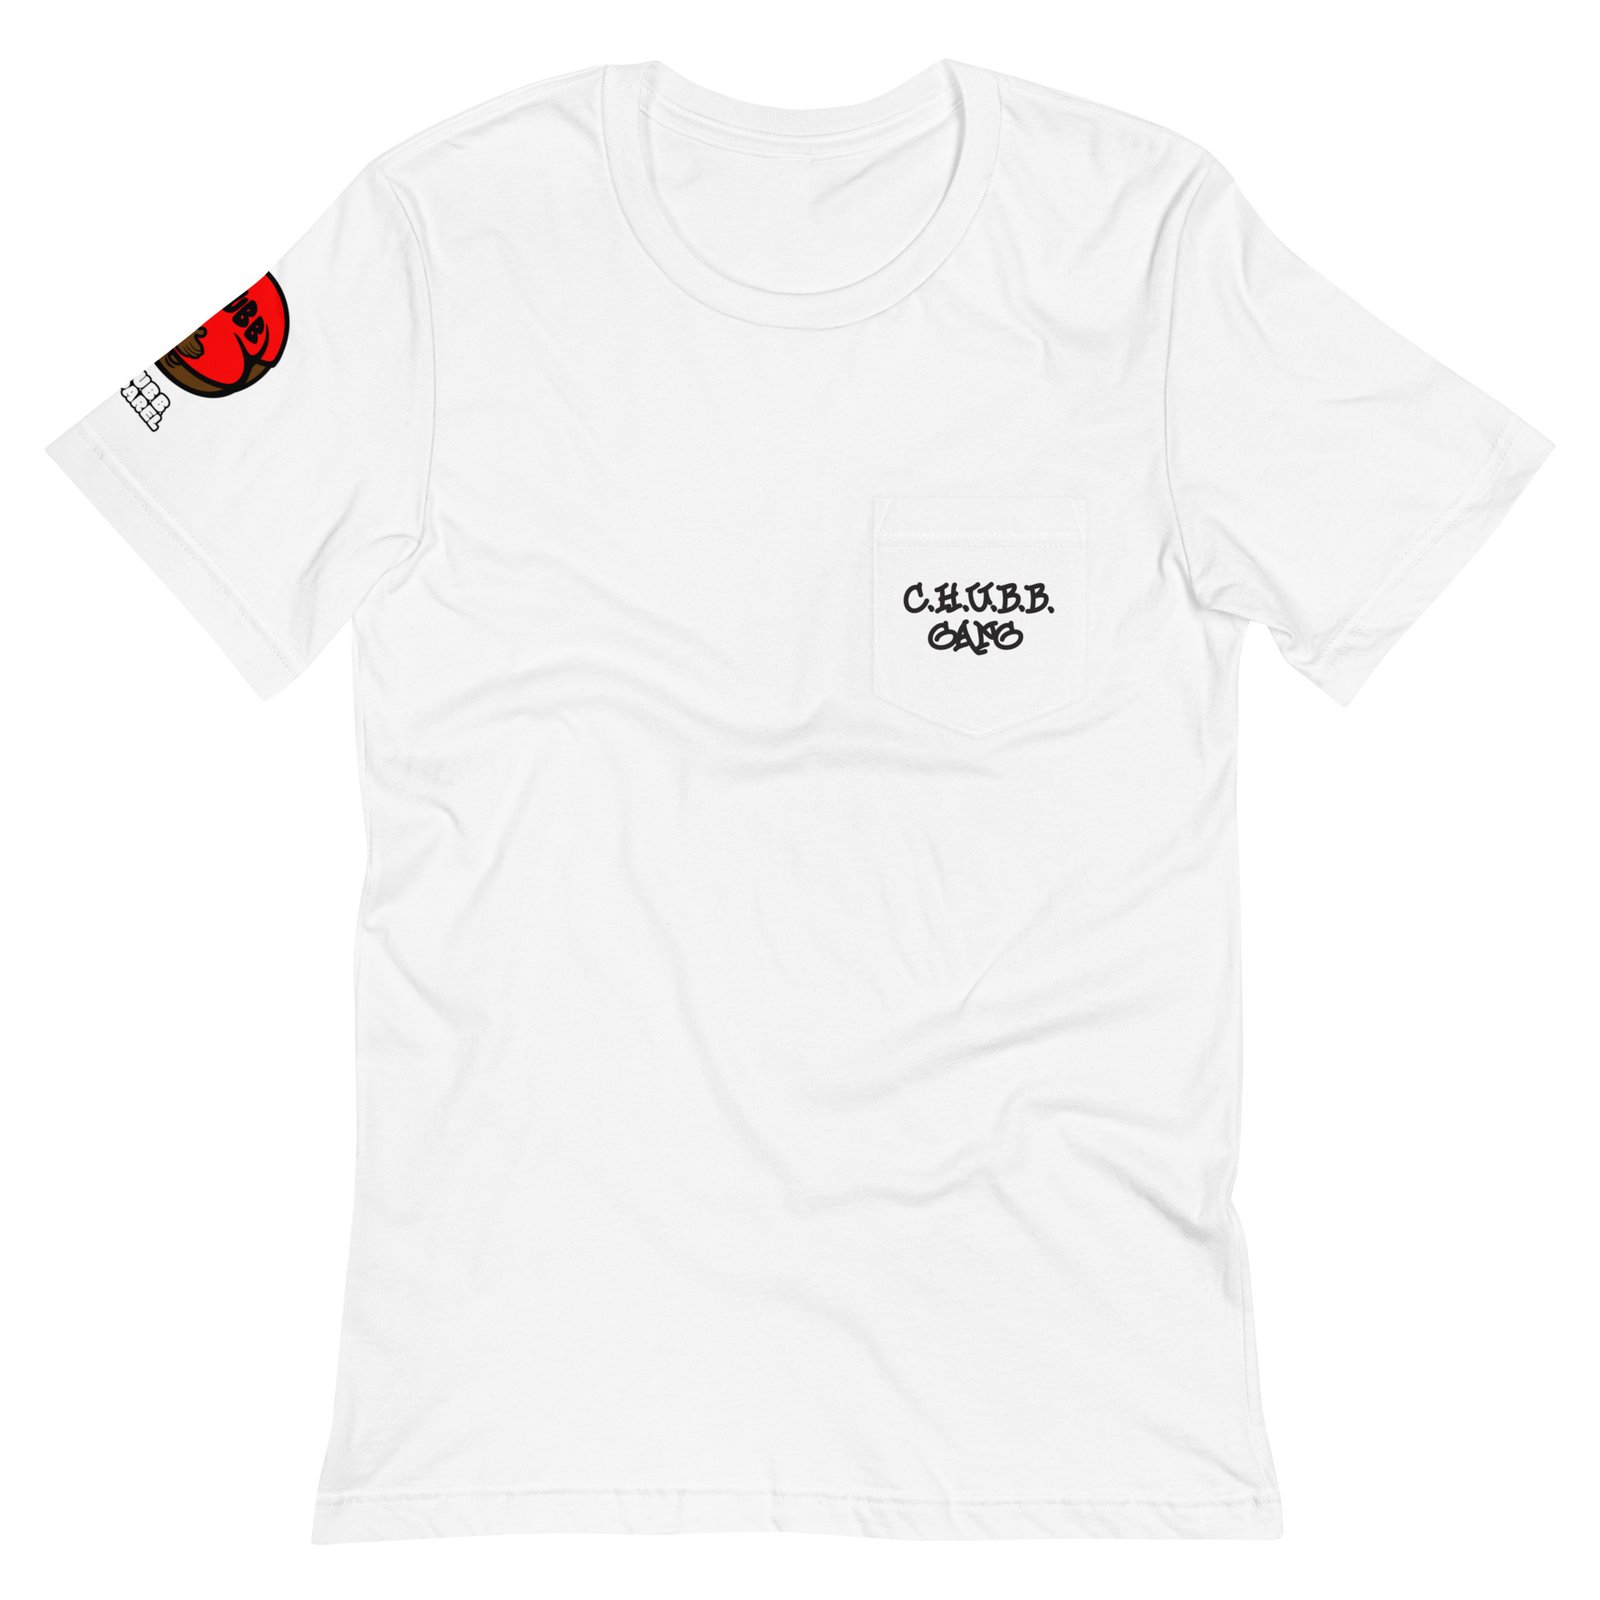 C.H.U.B.B. GANG Pocket T-Shirt (White) | C.H.U.B.B. Apparel